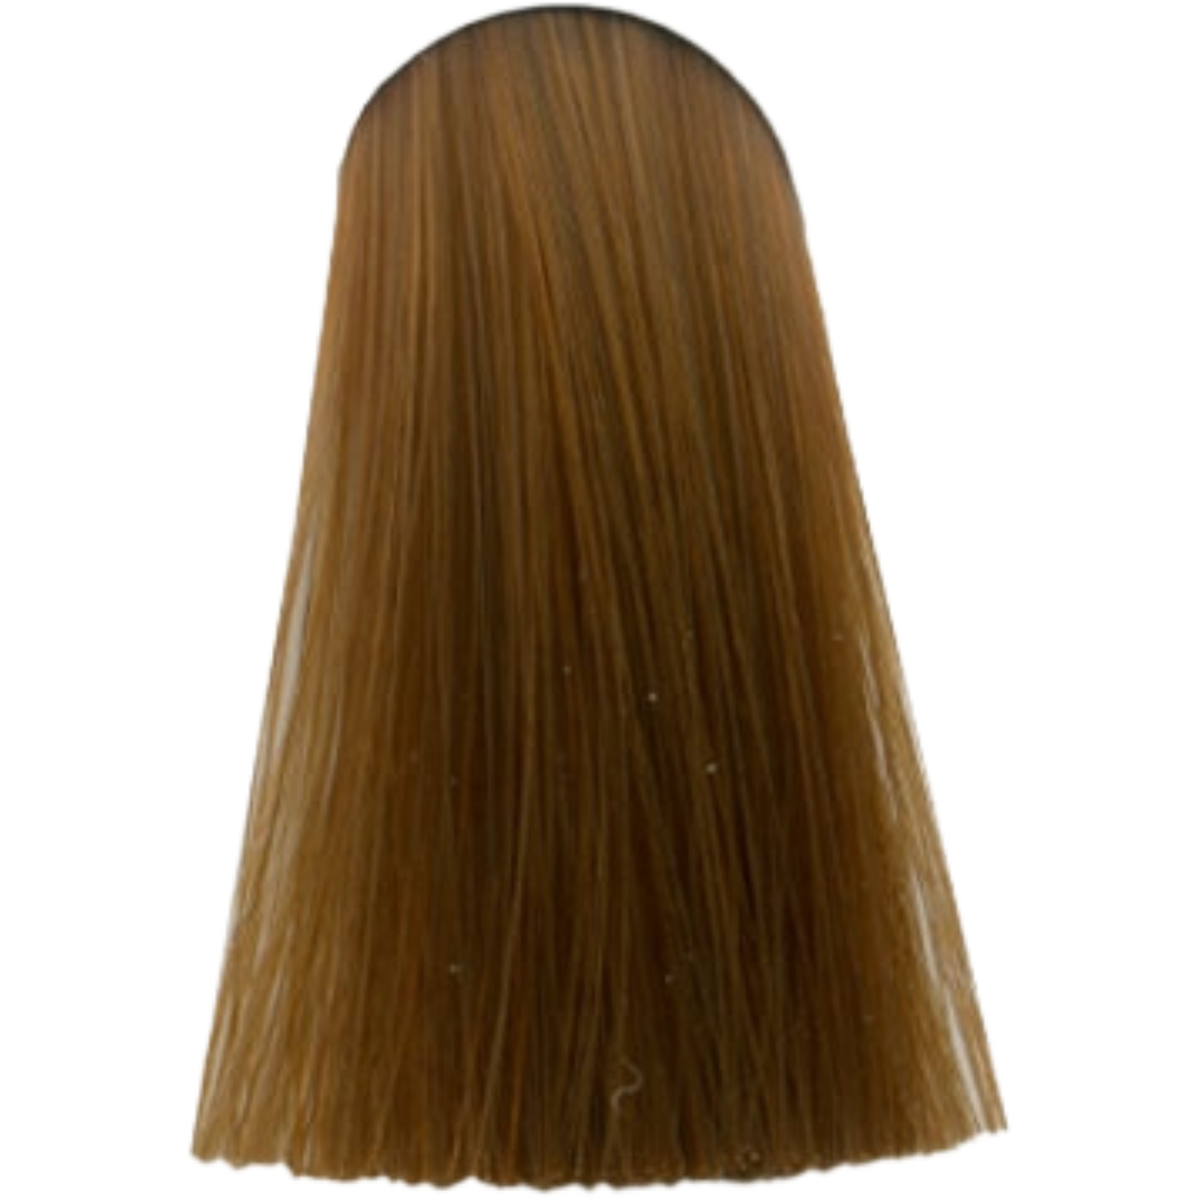 צבע לשיער 8.34 LIGHT BLONDE GOLD COPPER אינדולה INDOLA צבע לשיער 60 גרם